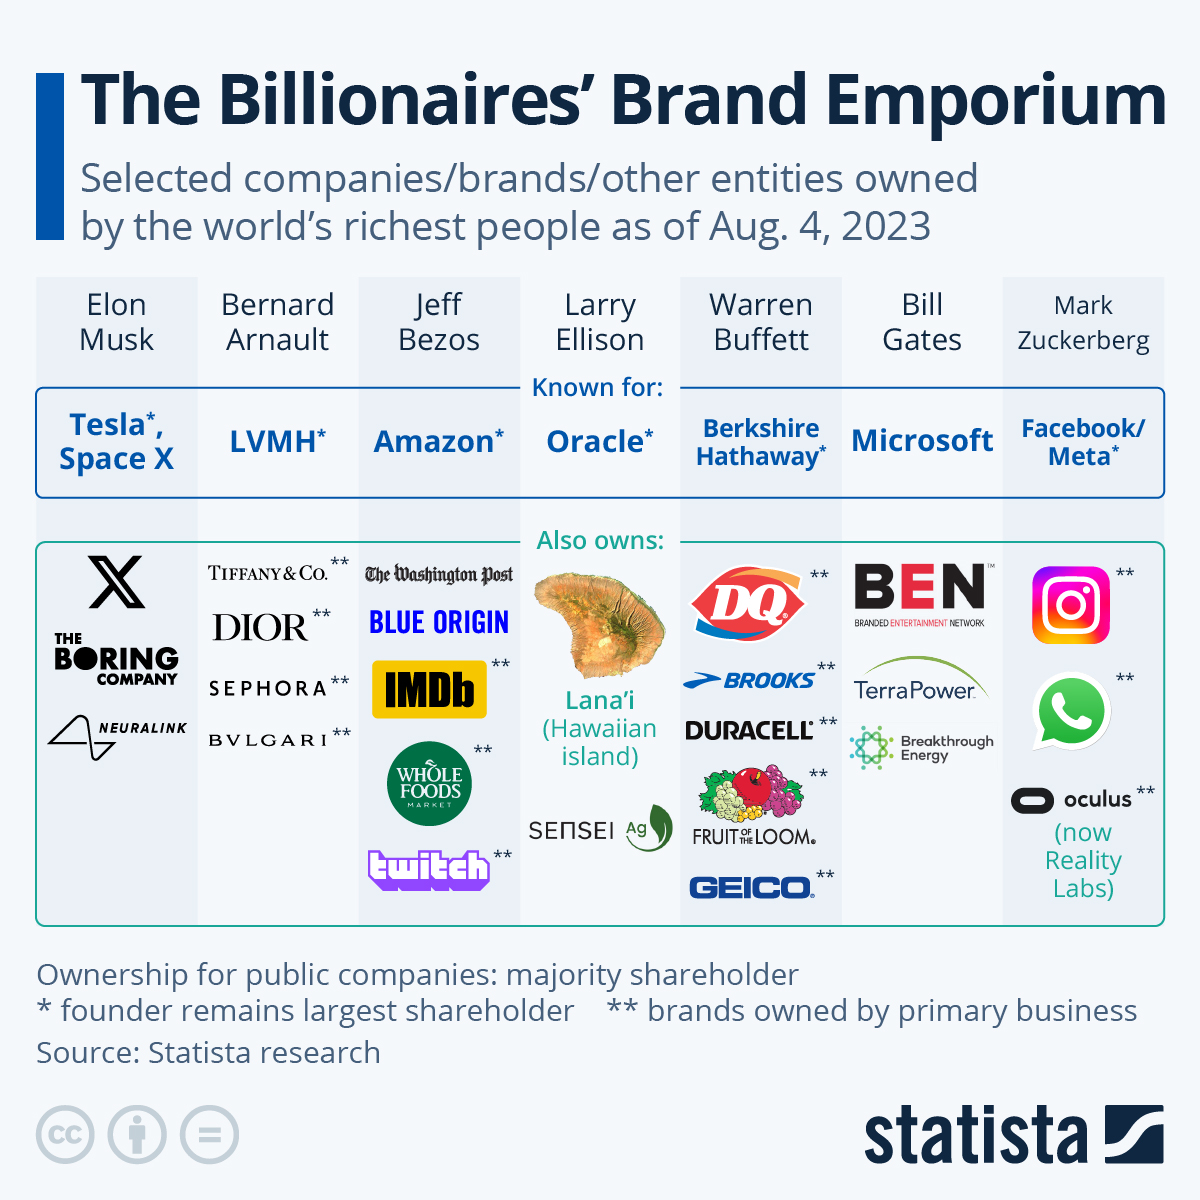 The Billionaires'' Brand Emporium